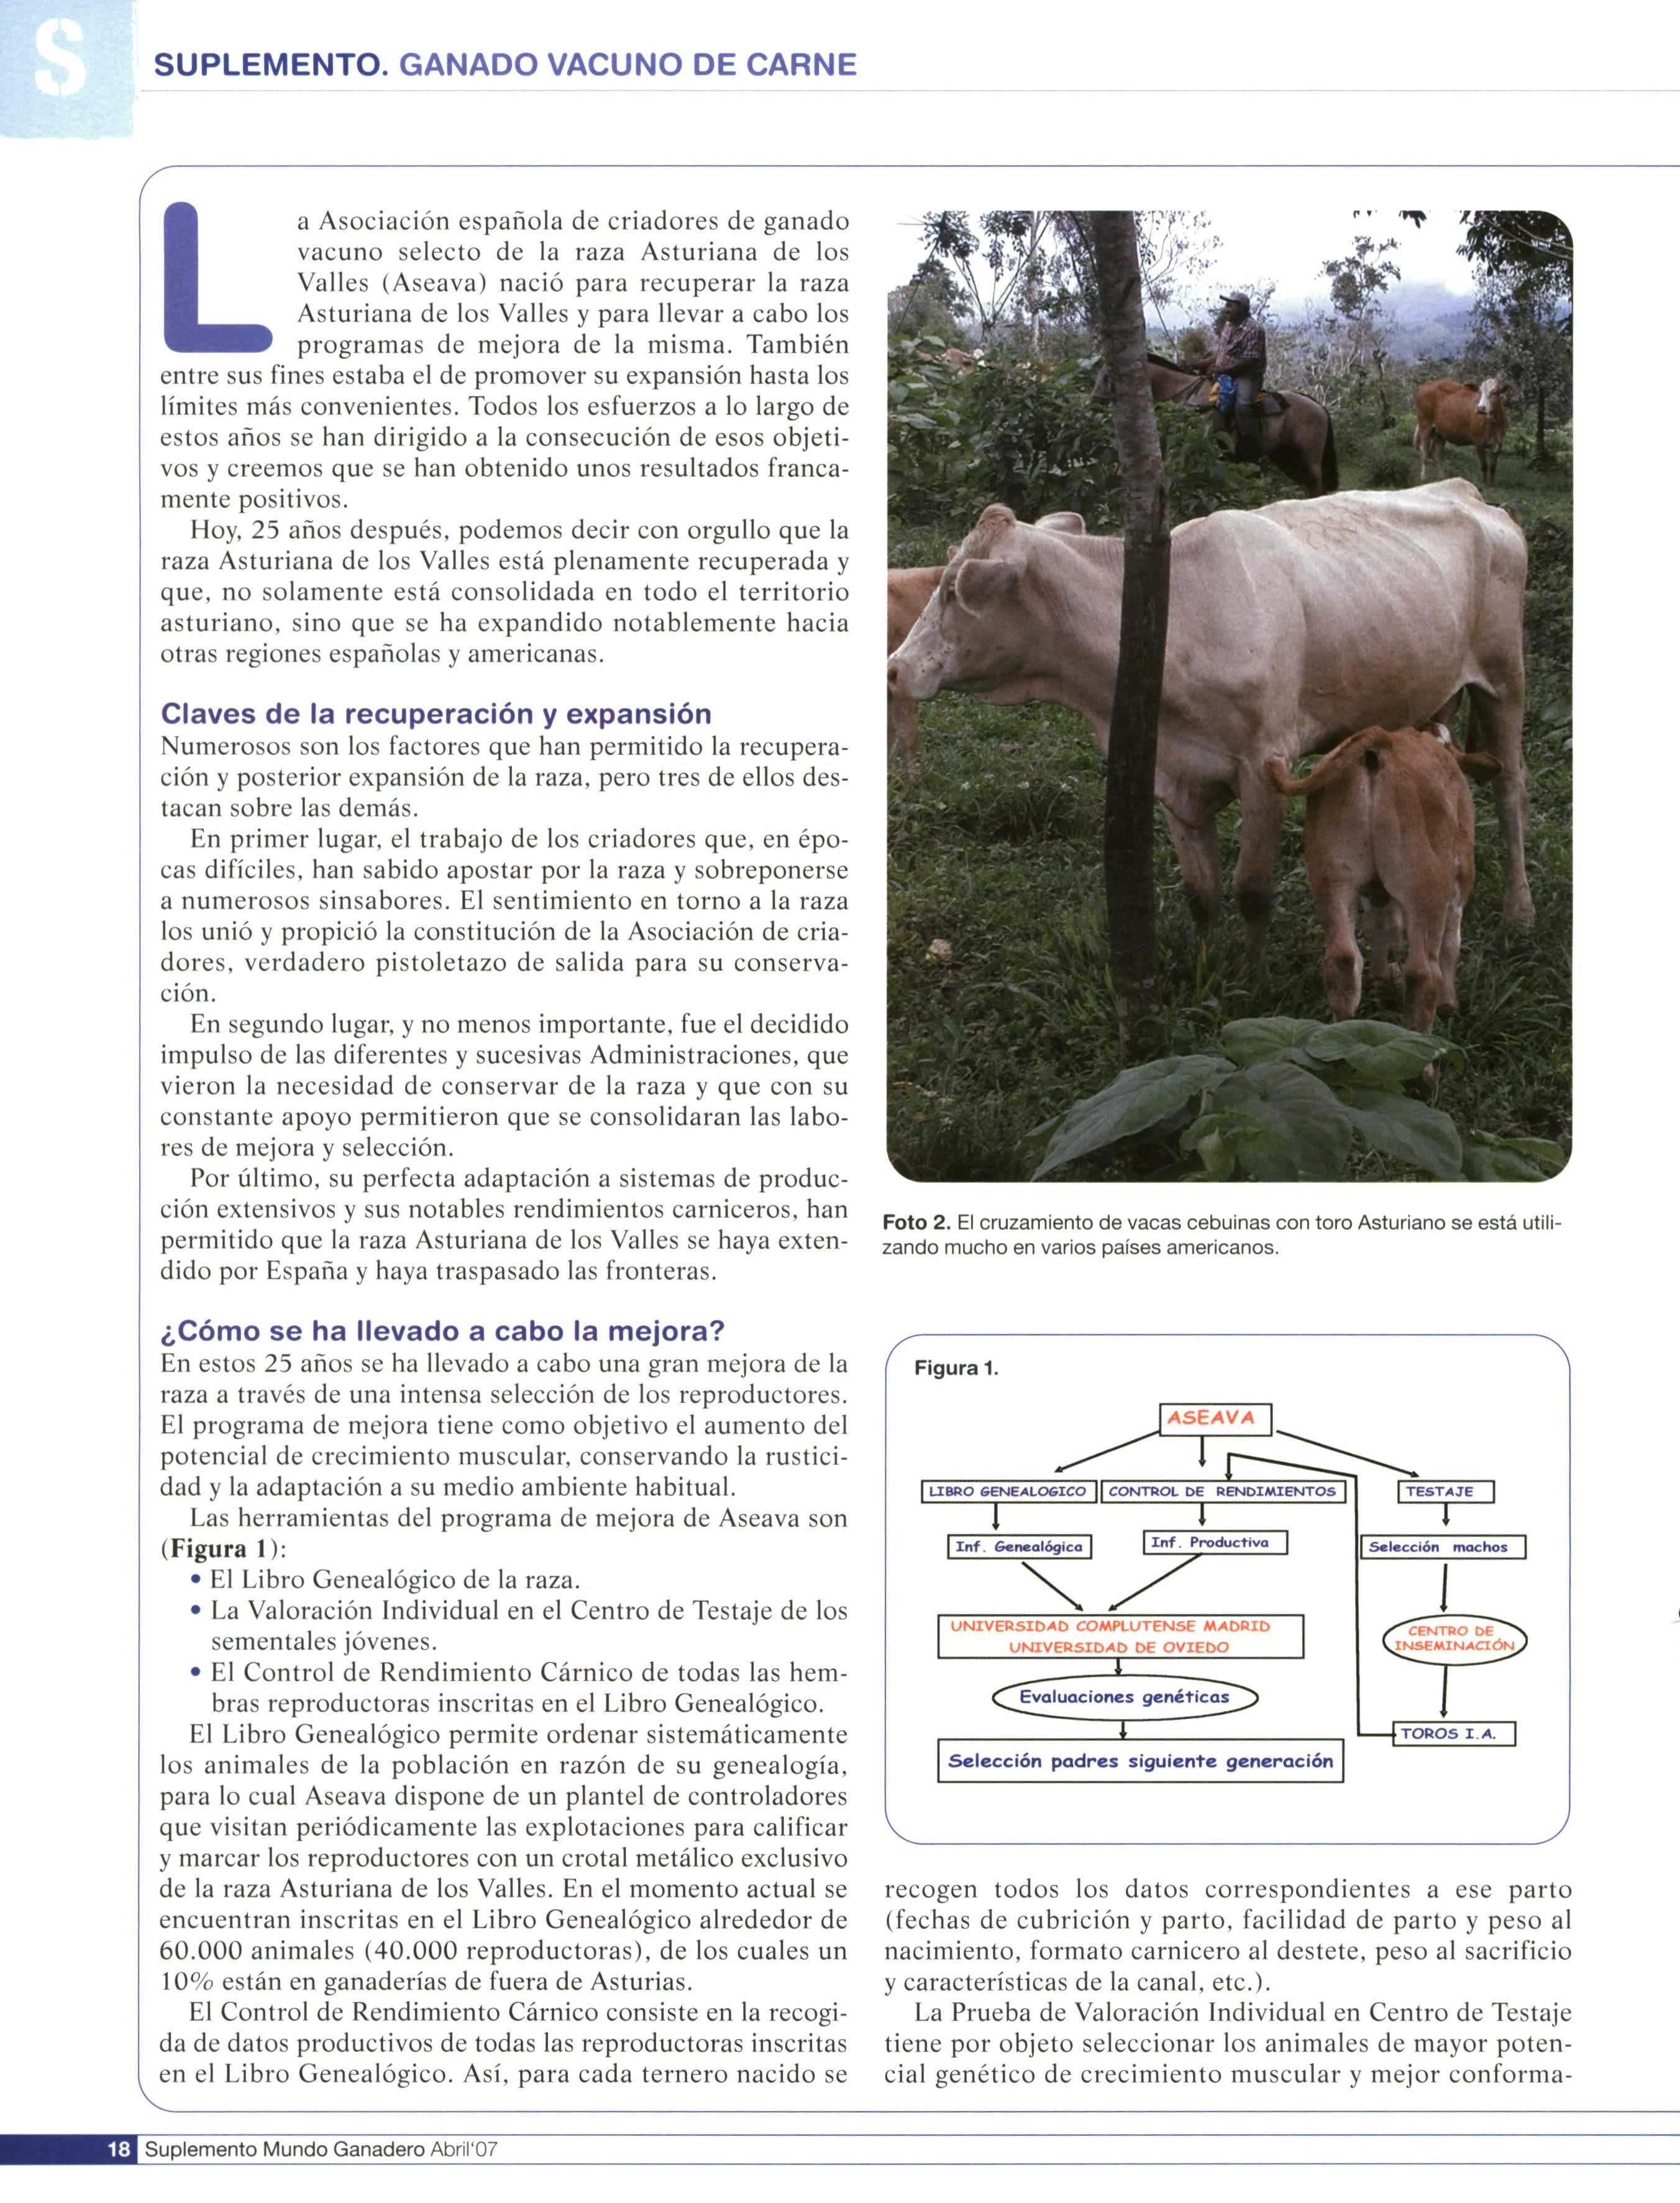 a Asociación española de criadores de ganado vacuno selecto de la raza Asturiana de los Valles (Aseava) nació para recuperar la raza Asturiana de los Valles y para llevar a cabo los L programas de